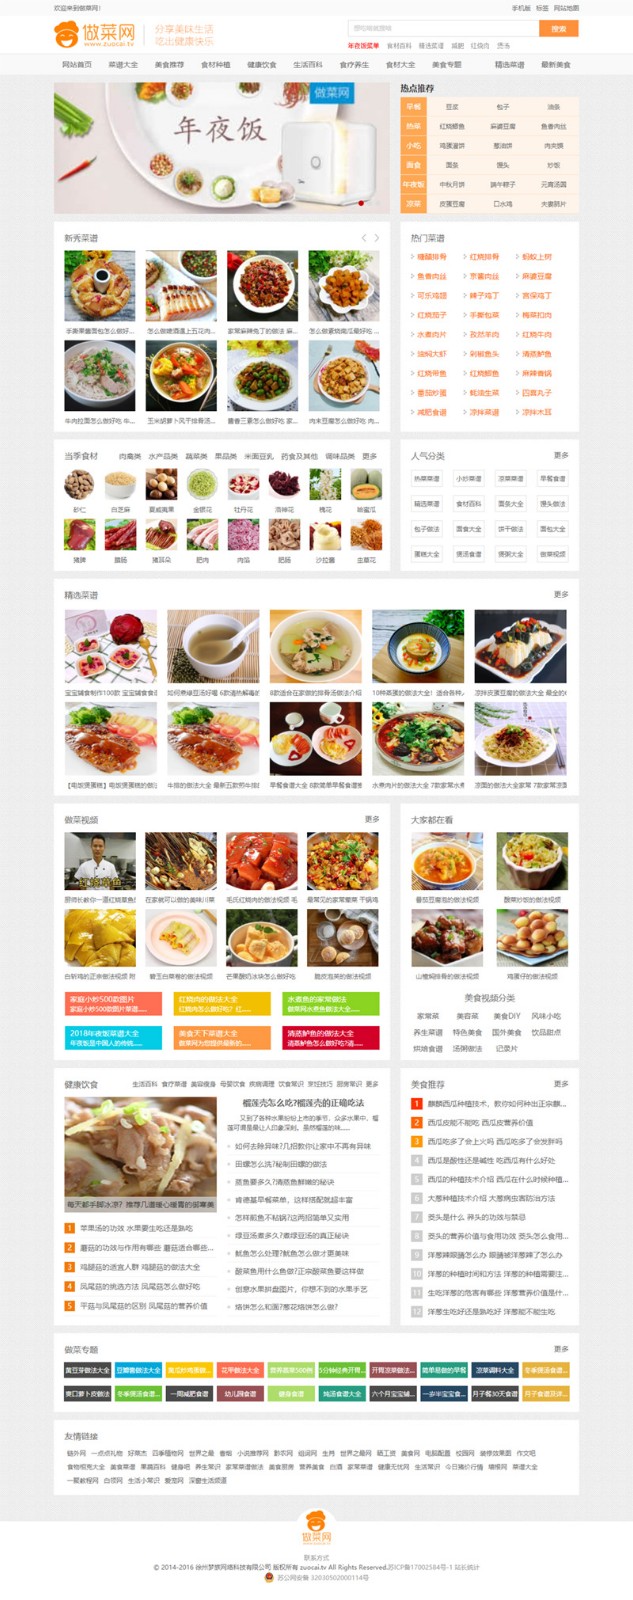 帝国CMS内核新版《做菜网》食谱网站源码免费下载 带手机版